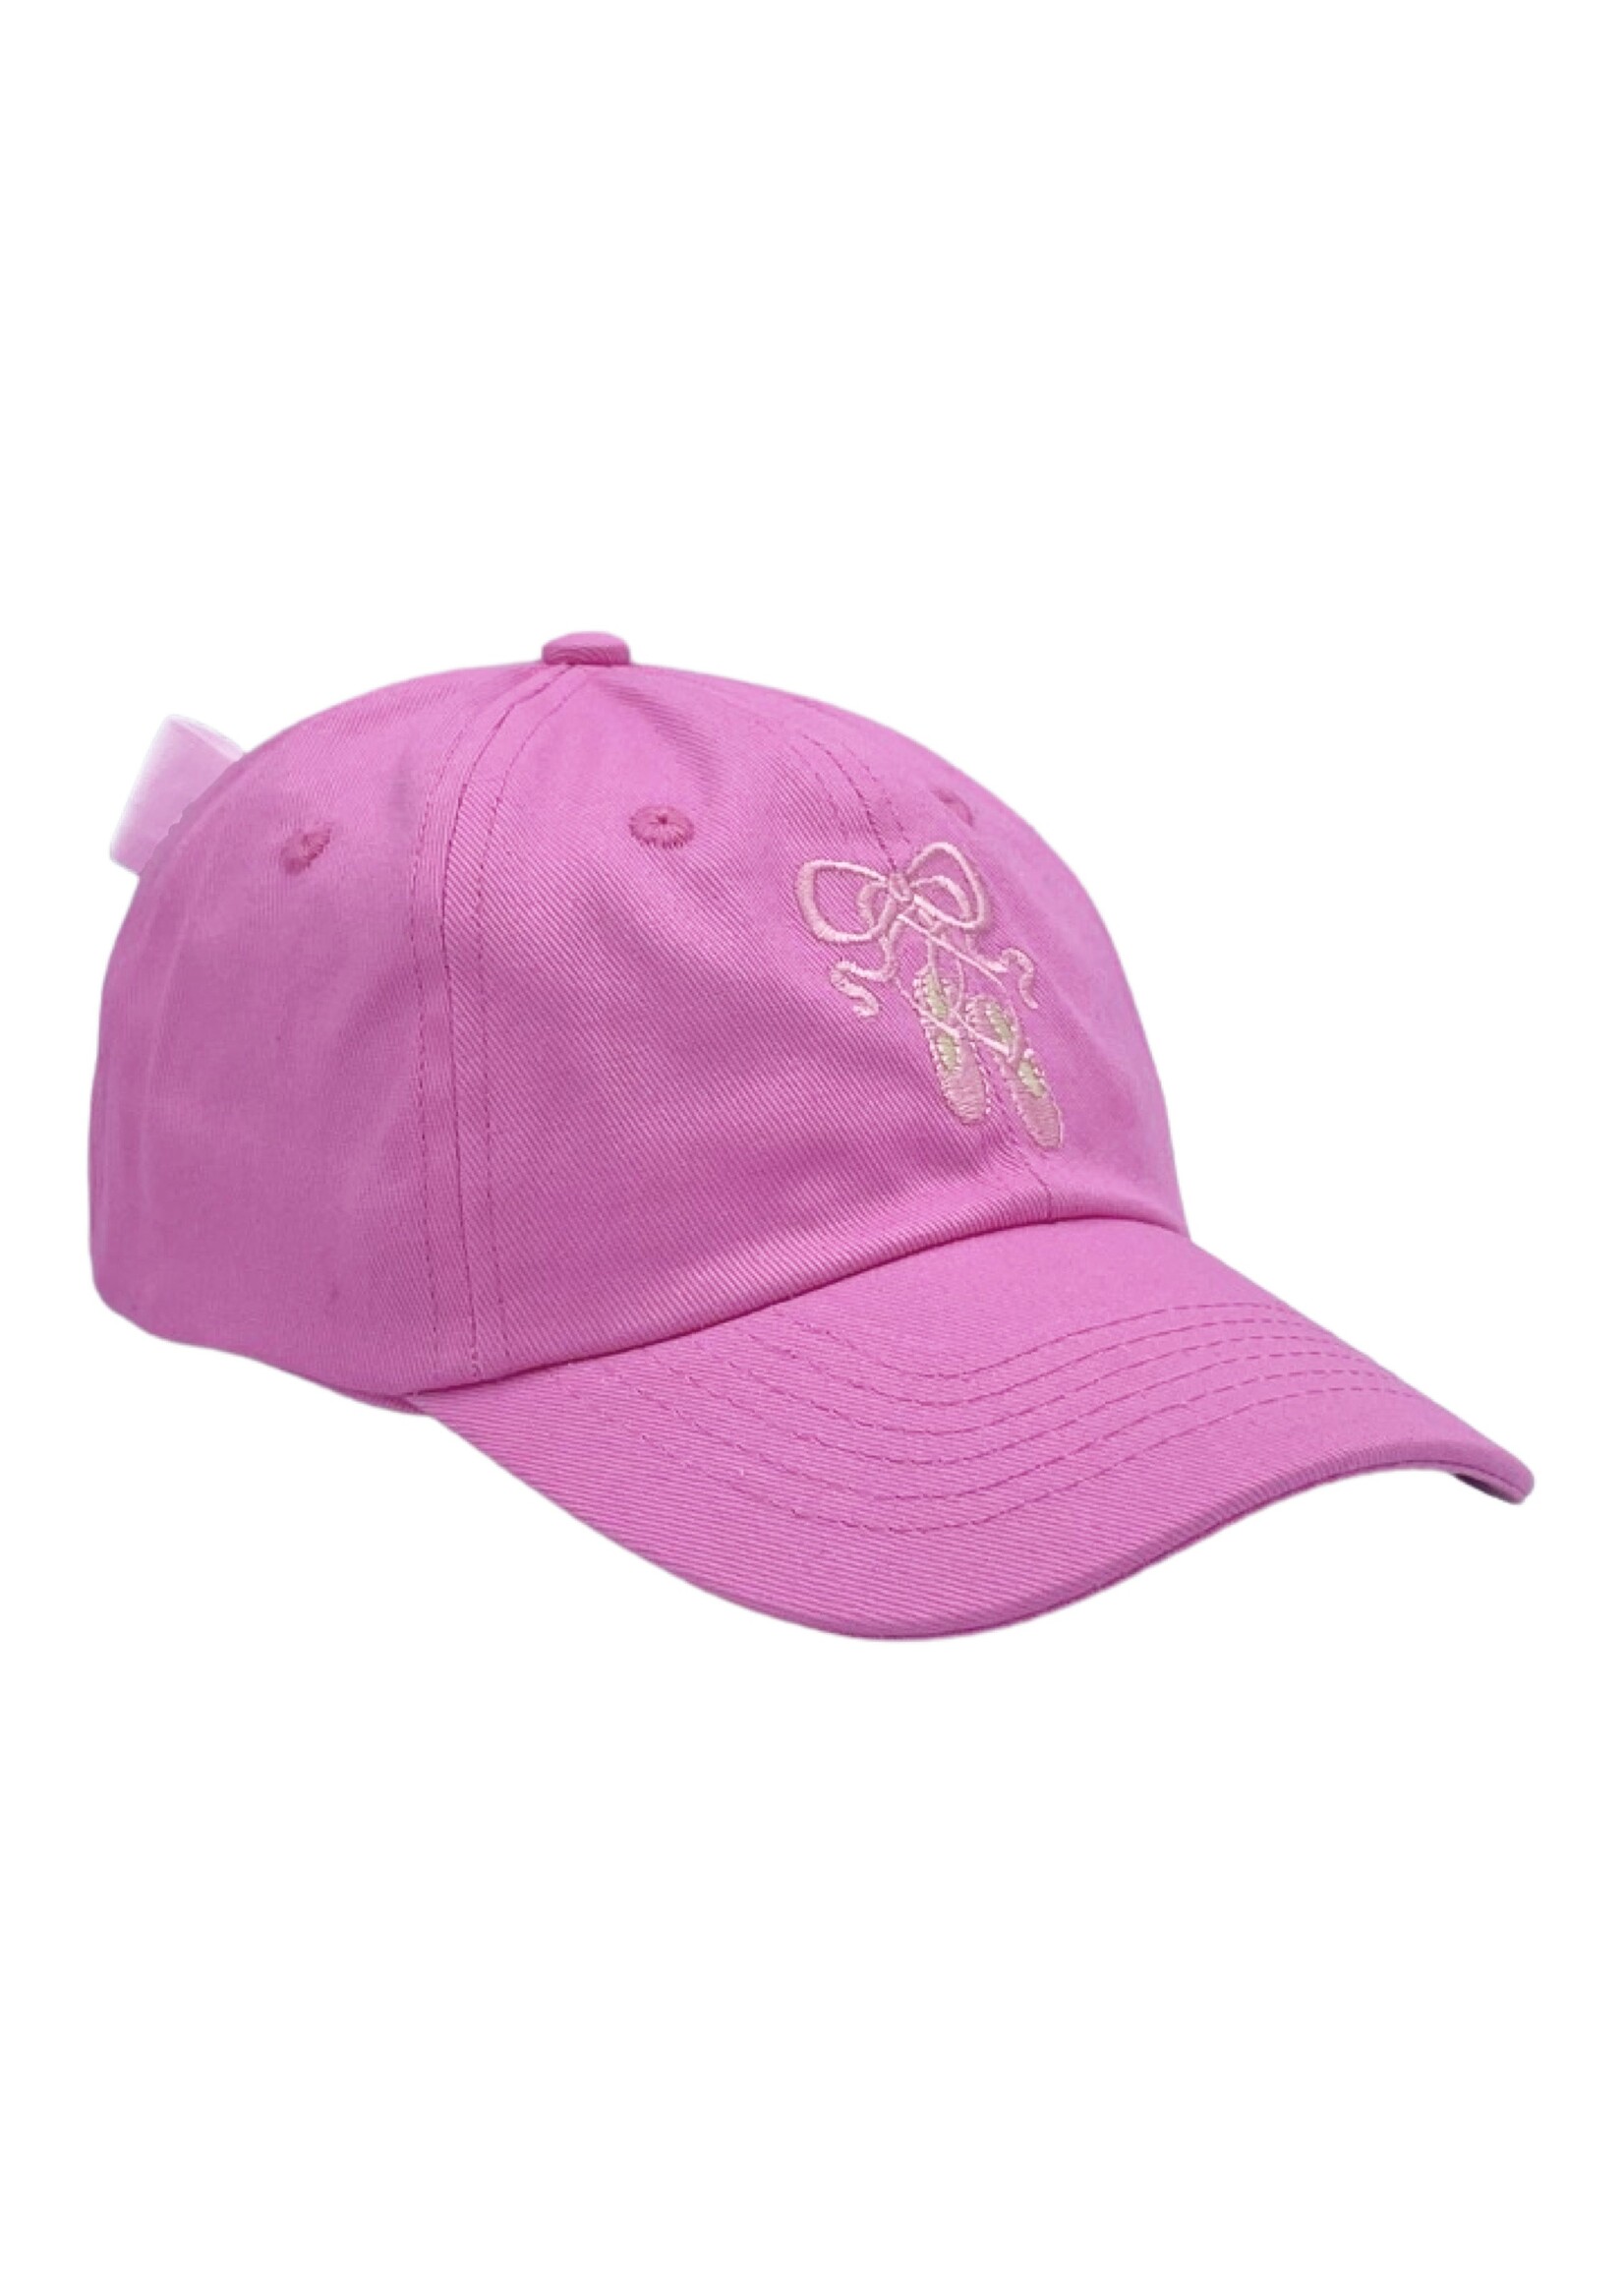 Bits & Bows Bits & Bows Ballet White Hat - Pink Hat